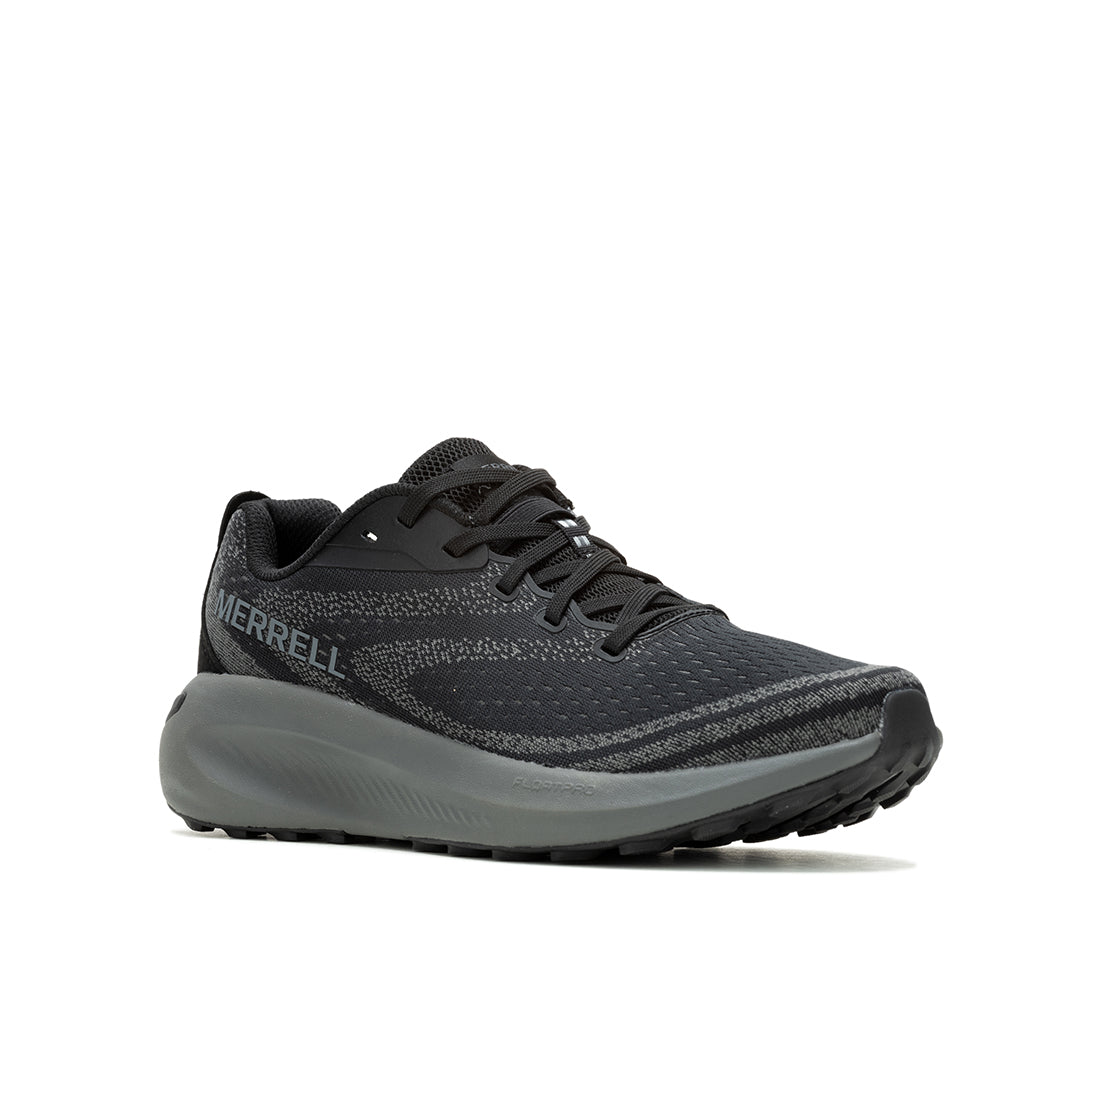 Morphlite - Black/Asphalt Mens Trail Running Shoes - 0